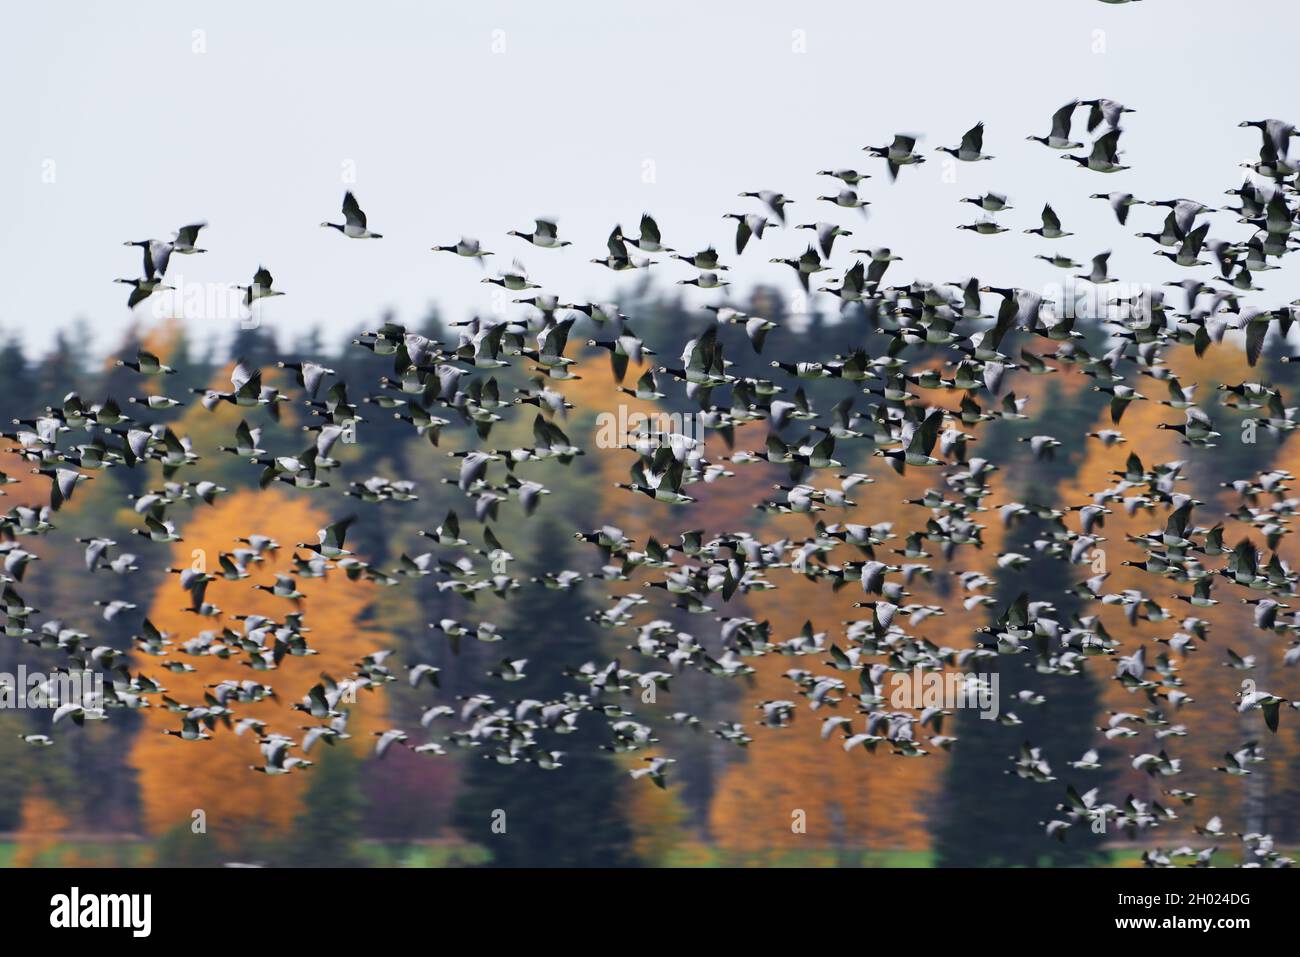 Am Oktobernachmittag in Helsinki, Finnland, fliegt eine dicke Schar von Seegans in schneller Geschwindigkeit durch den Wald mit Herbstlaub. Stockfoto